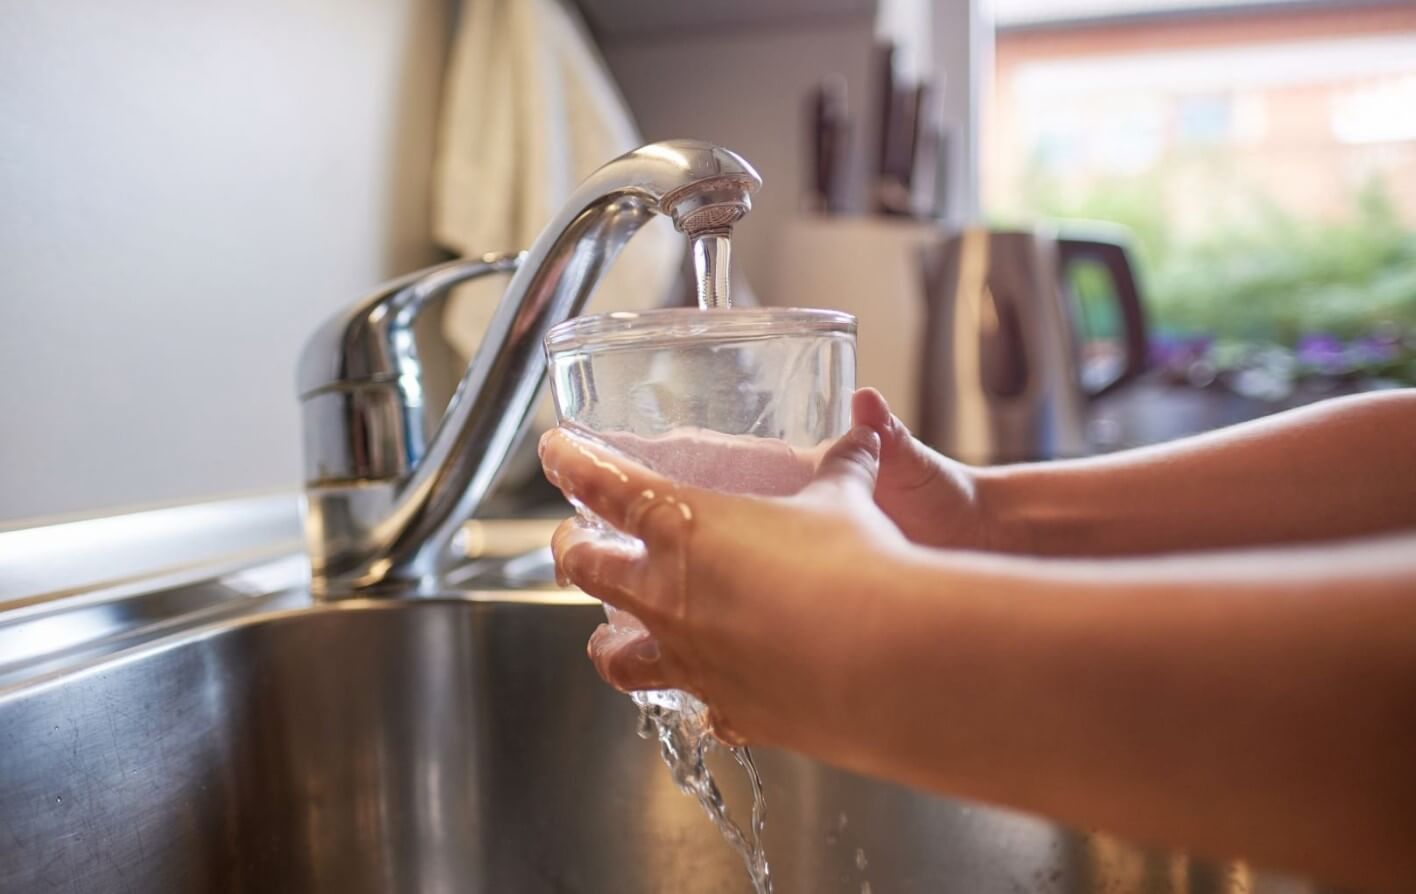 Подборка фактов о воде из-под крана — можно ли ее пить? Водопроводная вода считается чистой и ее многие пьют, но слишком часто делать это не рекомендуется. Фото.